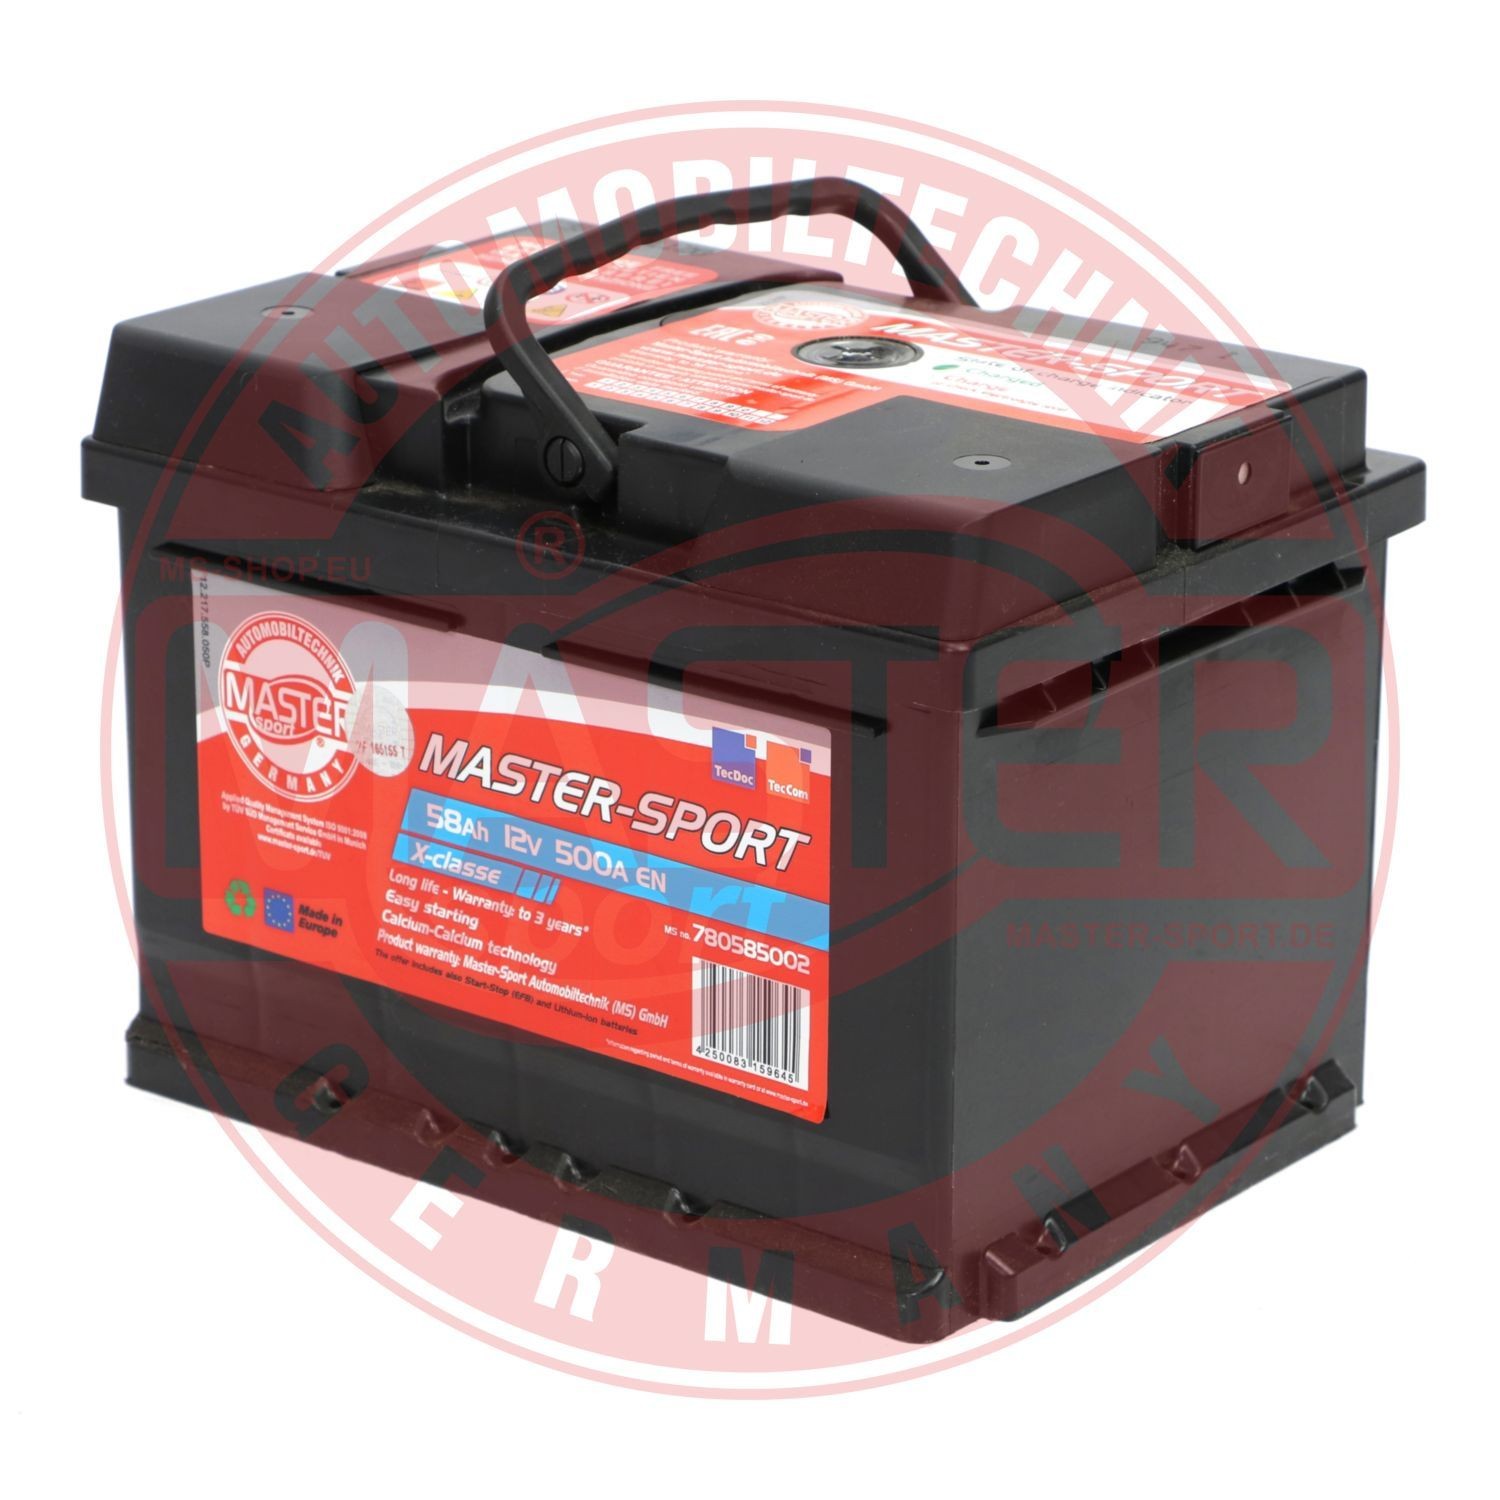 MASTER-SPORT Automotive battery 780585002